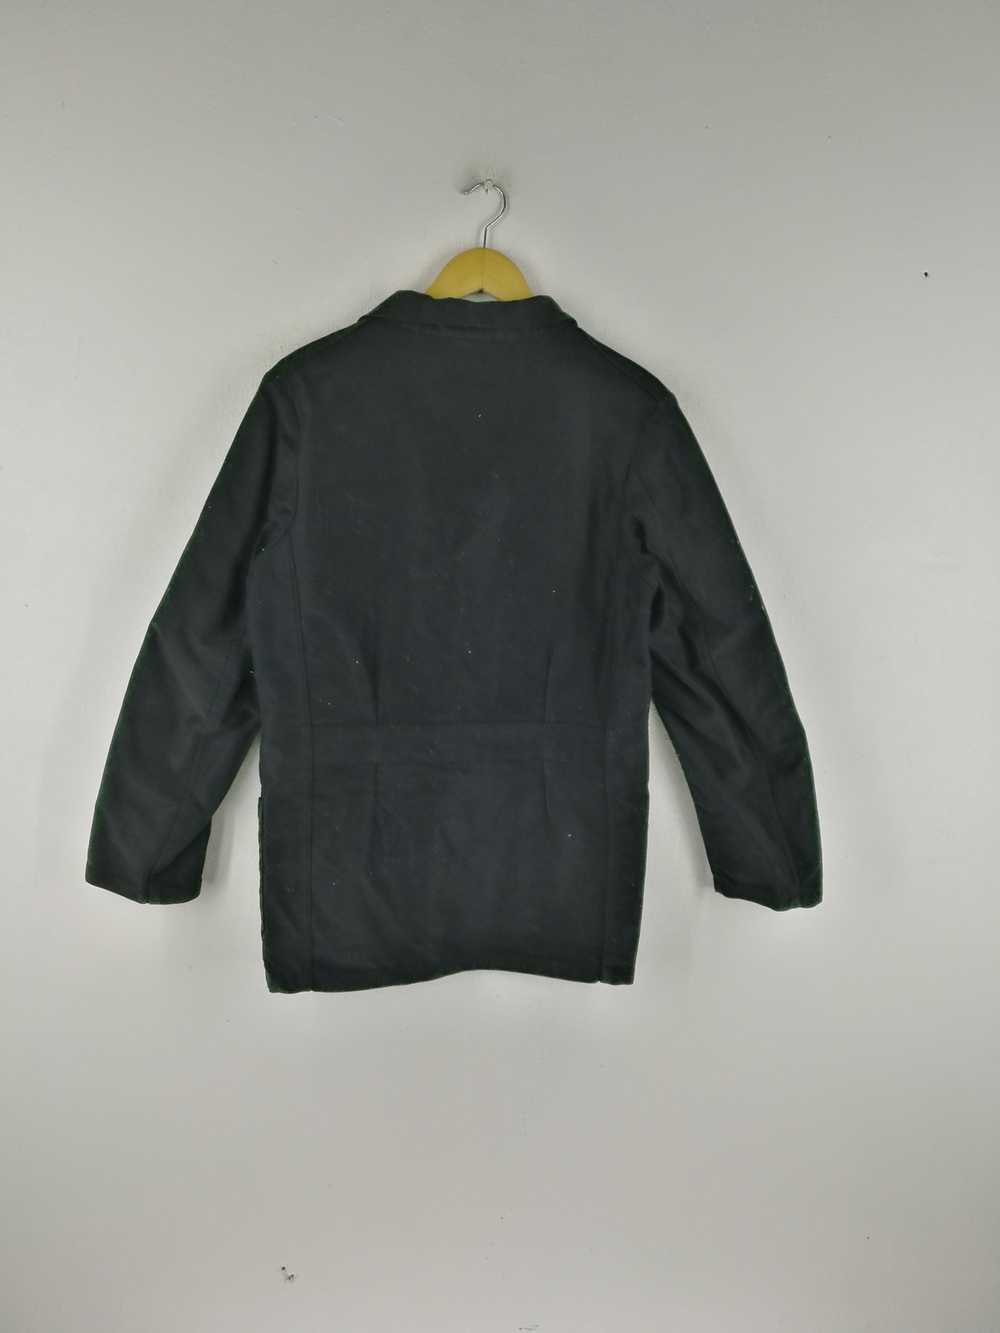 Vetra Vetra chore jacket made in France - Gem